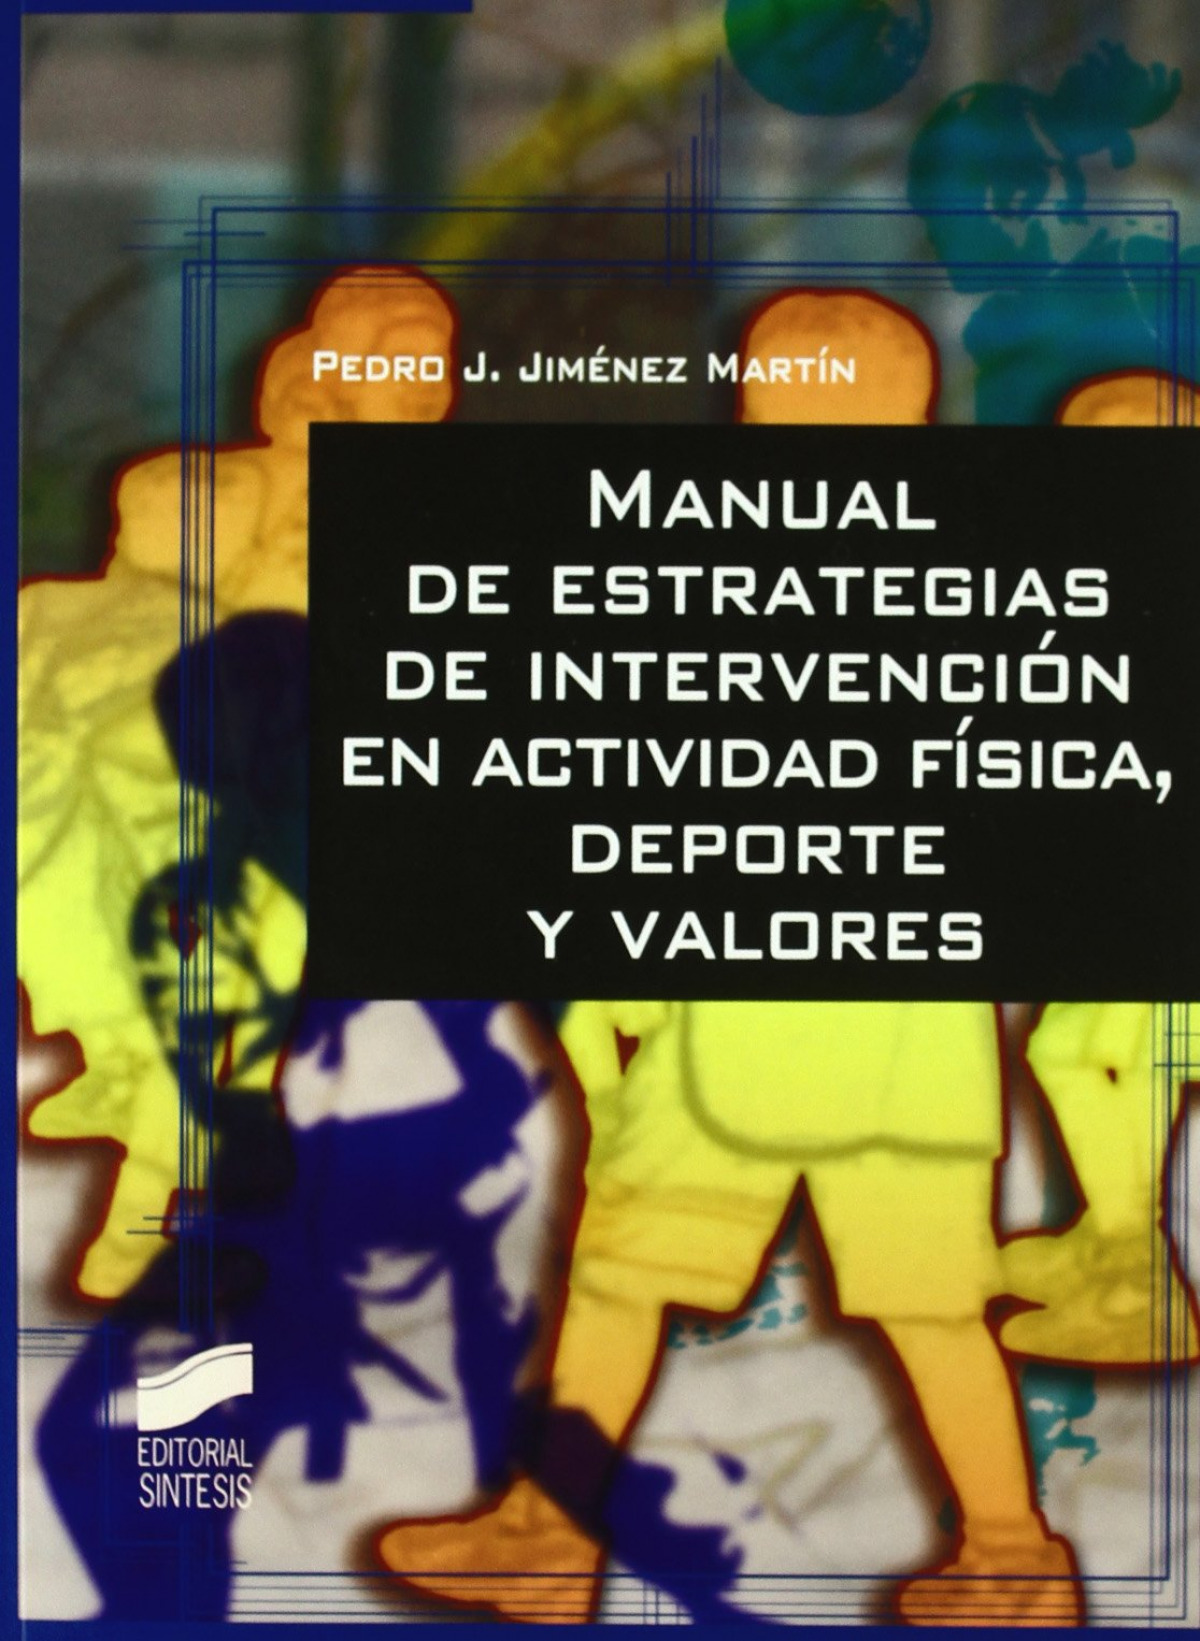 Manual estrategias intervencion actividad fisica, deporte - Jimenez Martin, Pedro J.